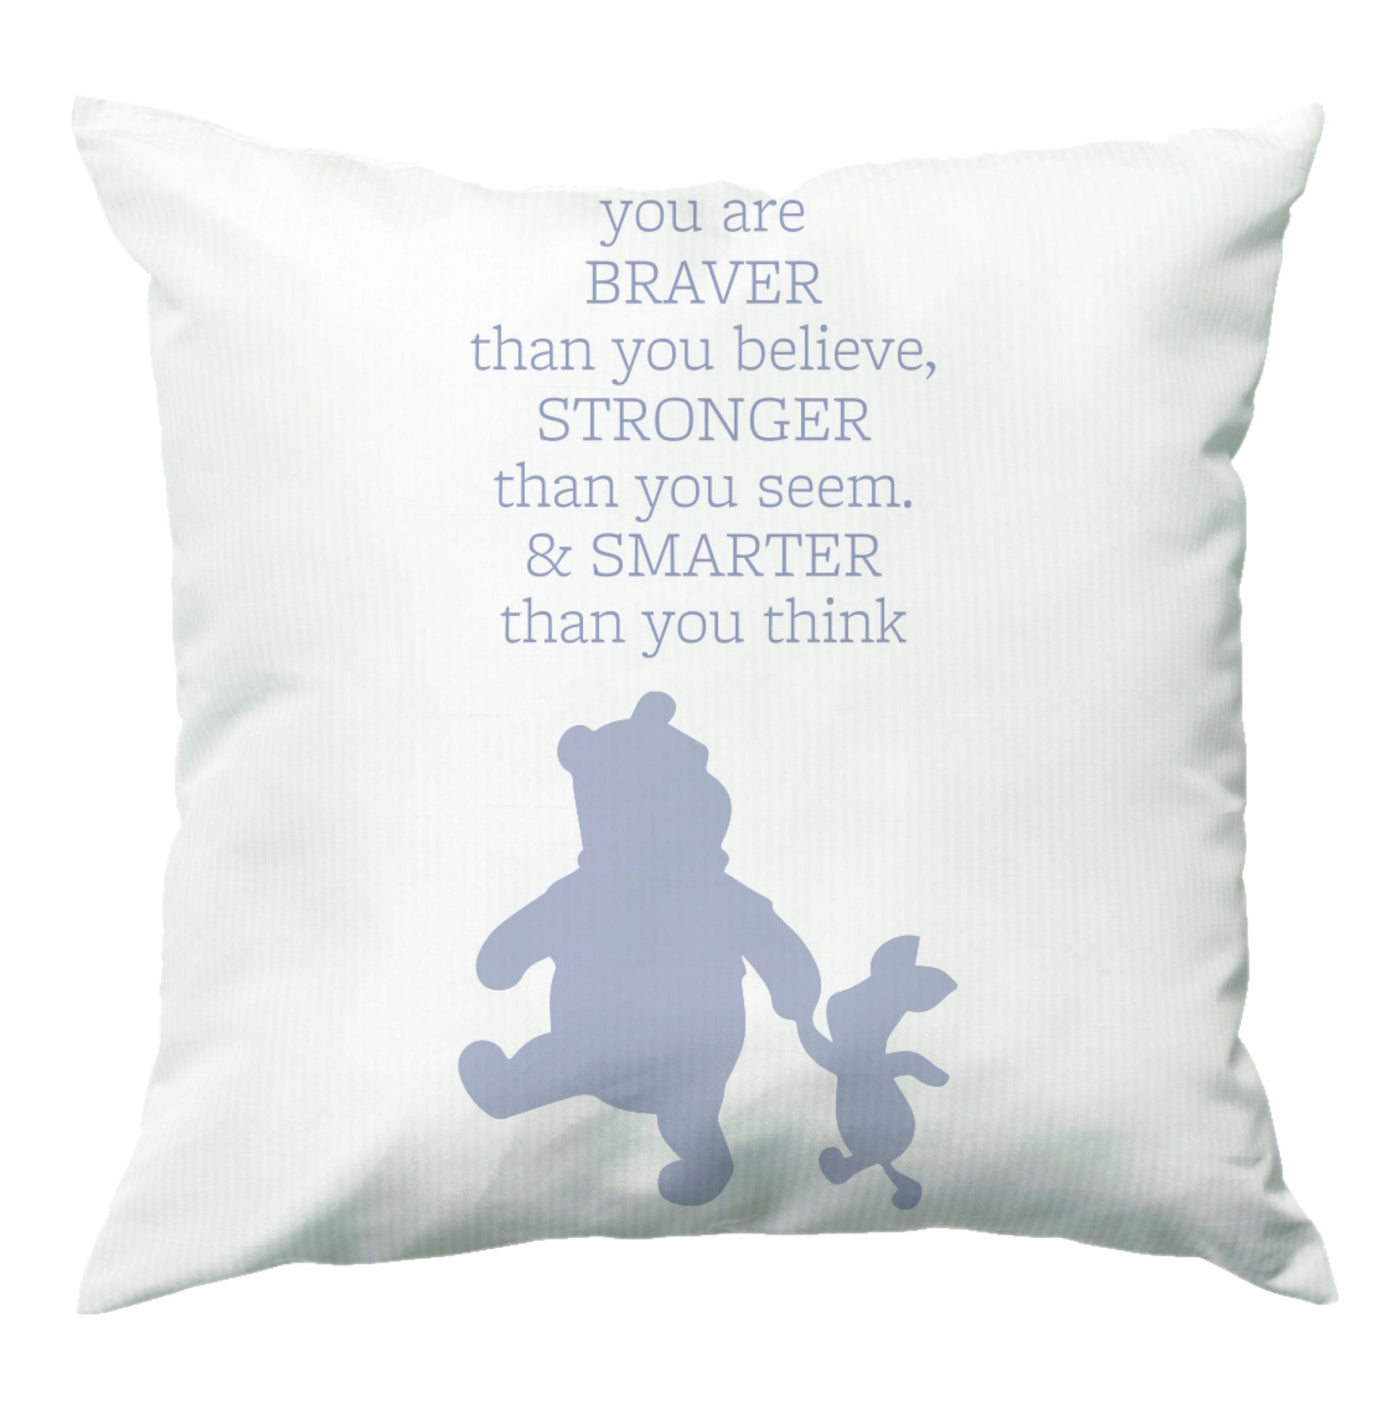 Braver, Stronger, Smarter - Disney Cushion